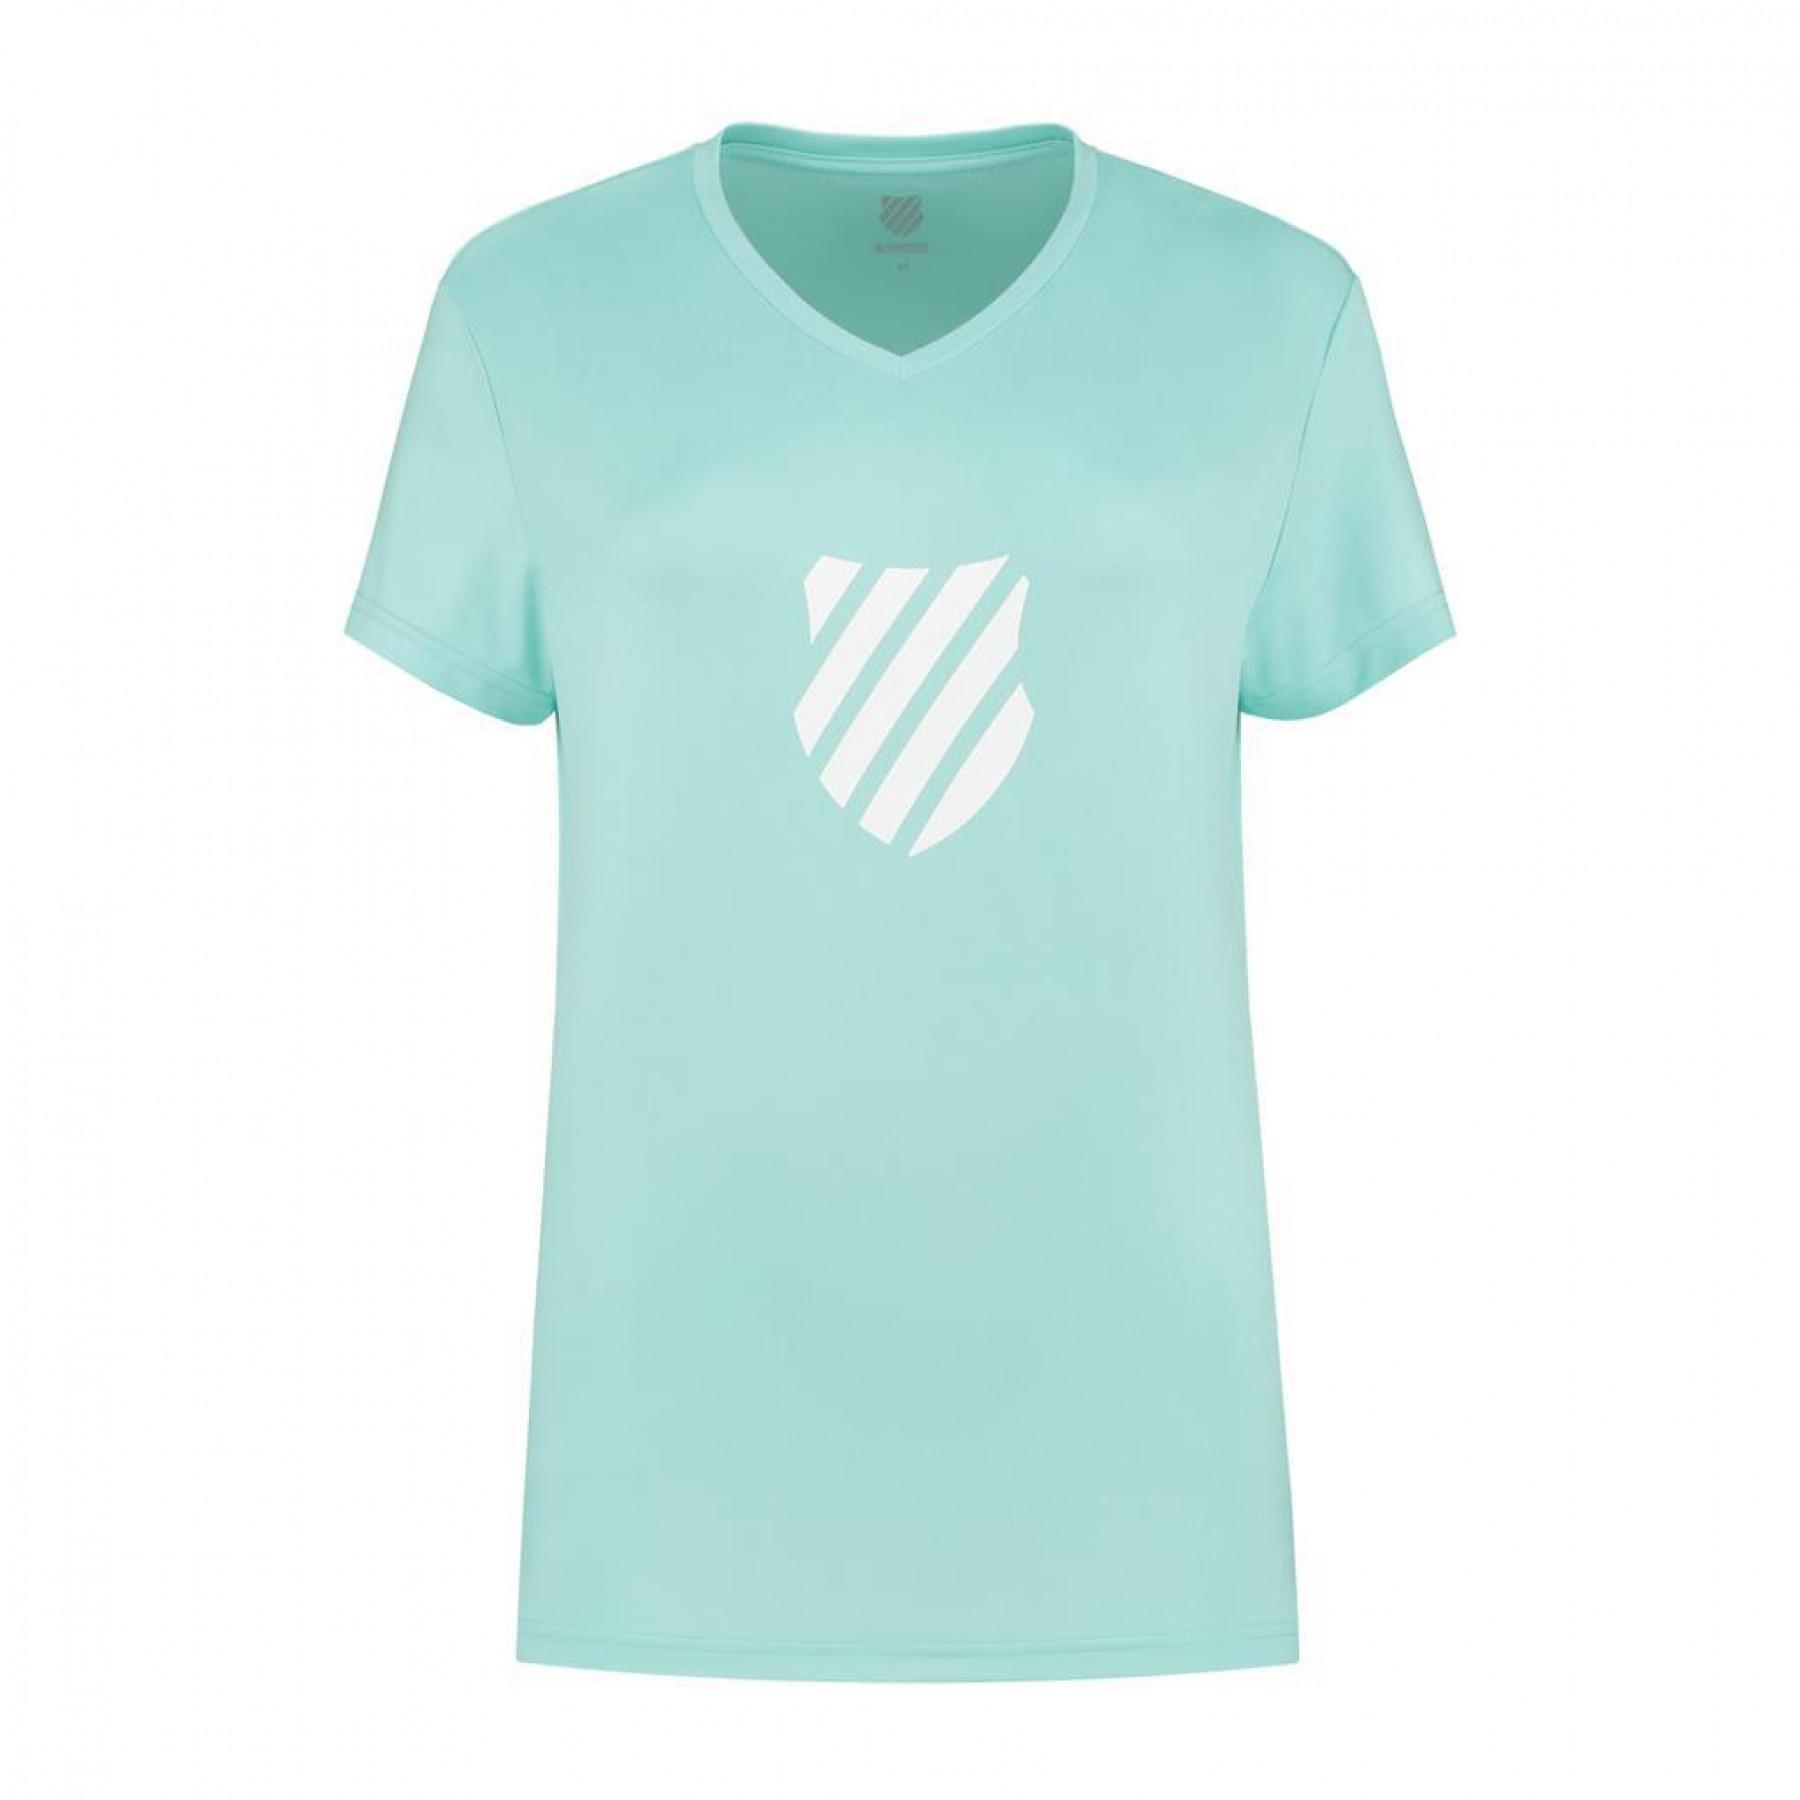 Damen-T-Shirt K-Swiss hypercourt express logo